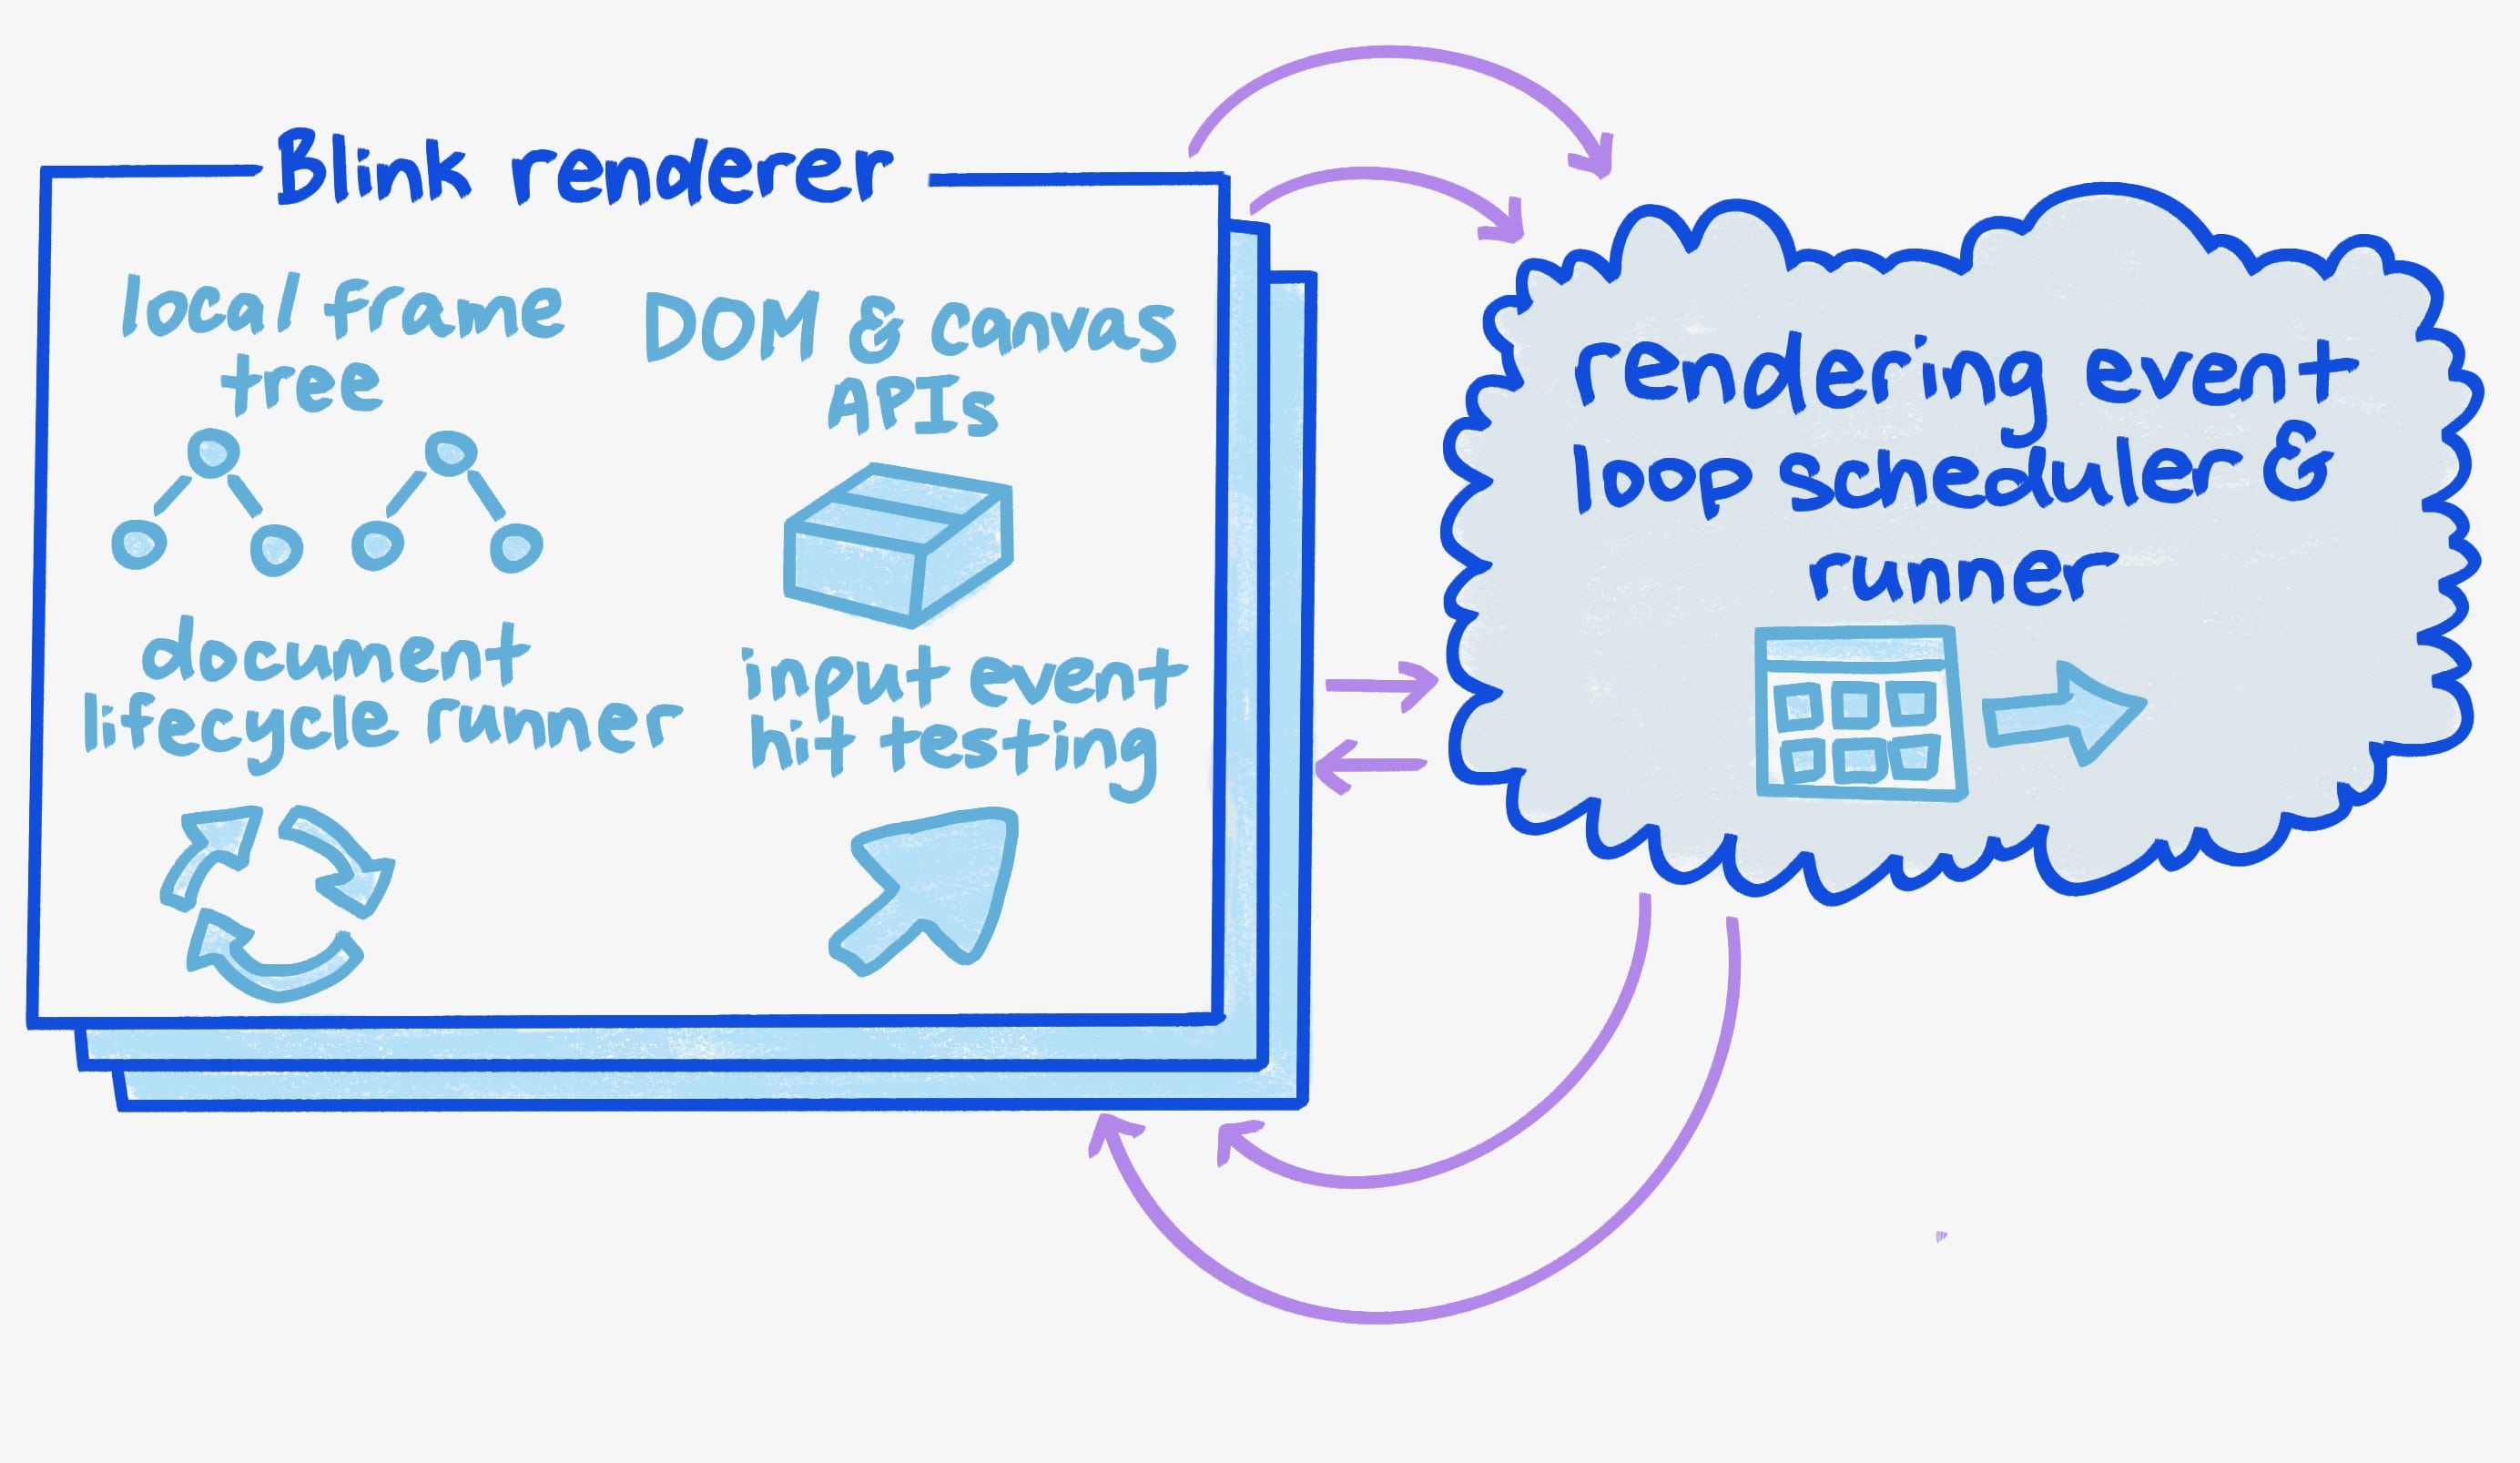 A diagram of the Blink renderer.